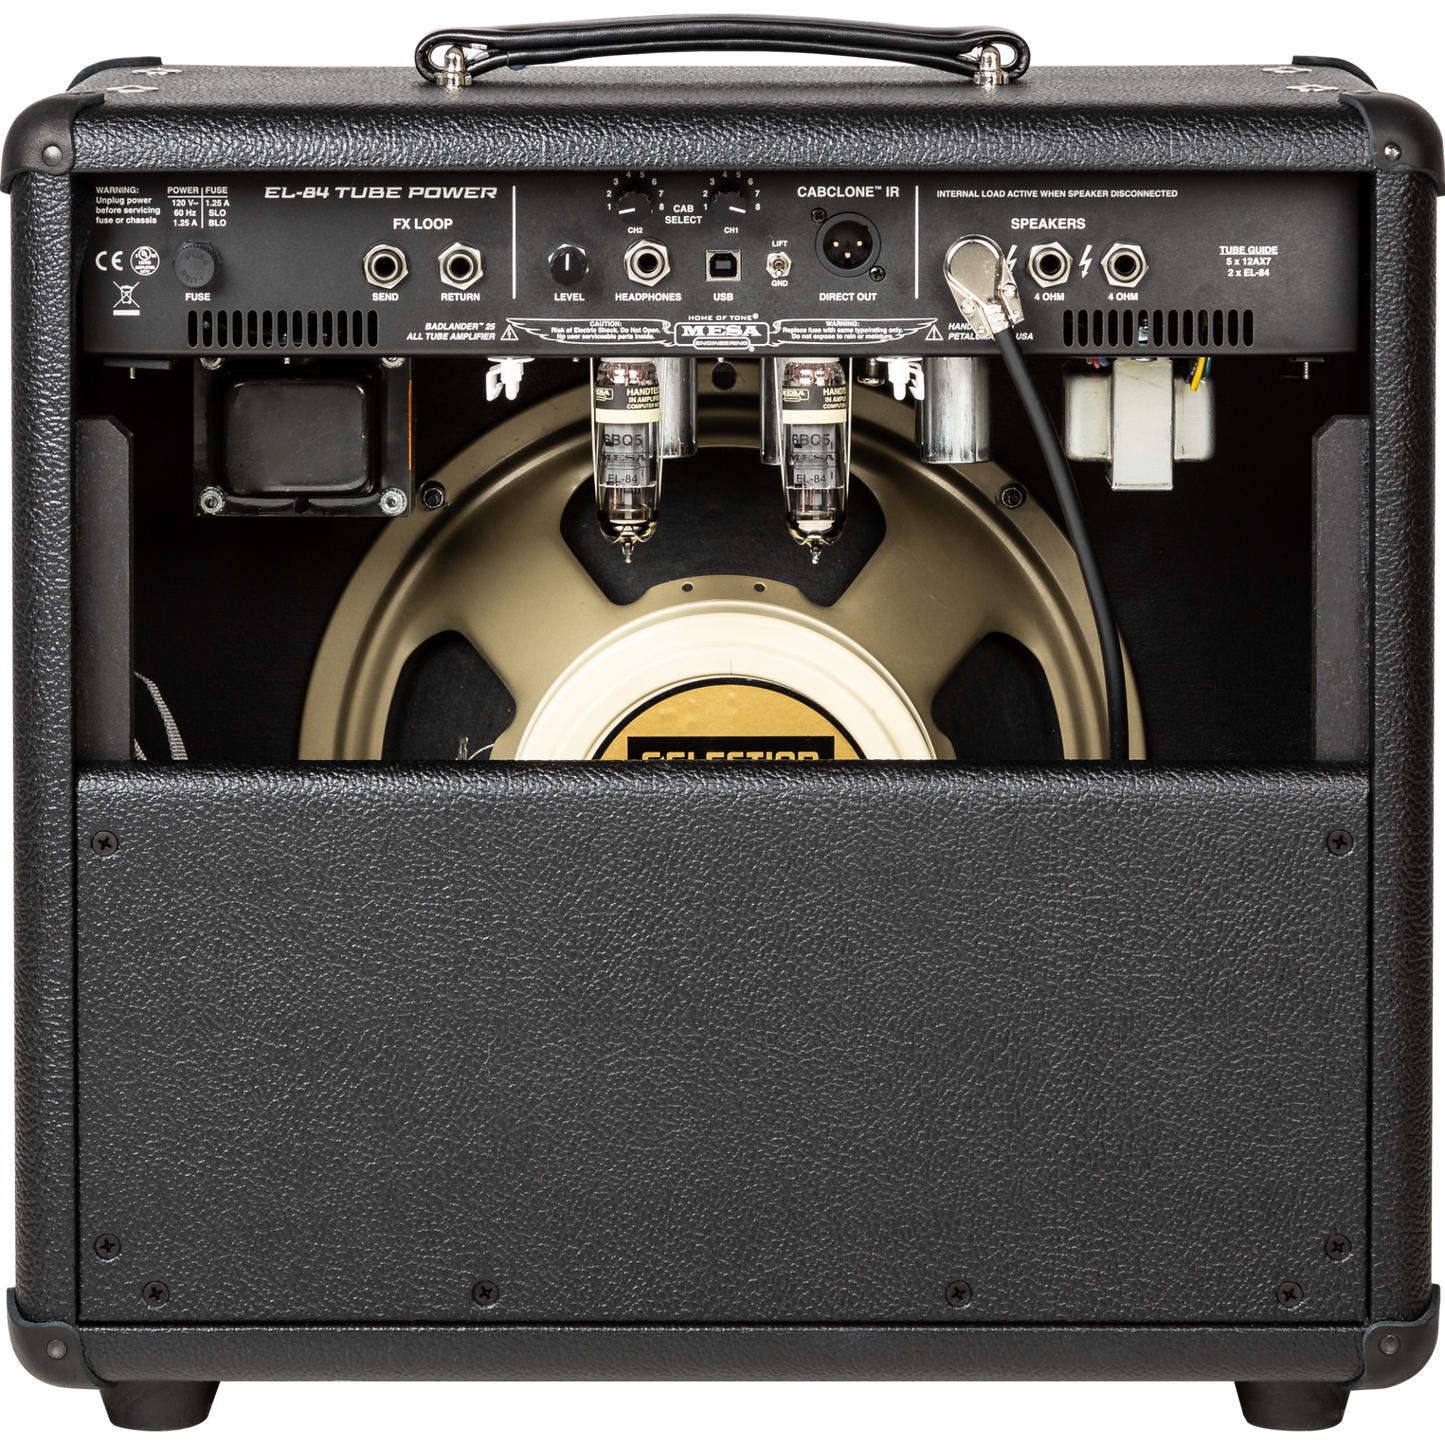 Mesa Boogie Rectifier Badlander 25 1x12” Combo Amplifier